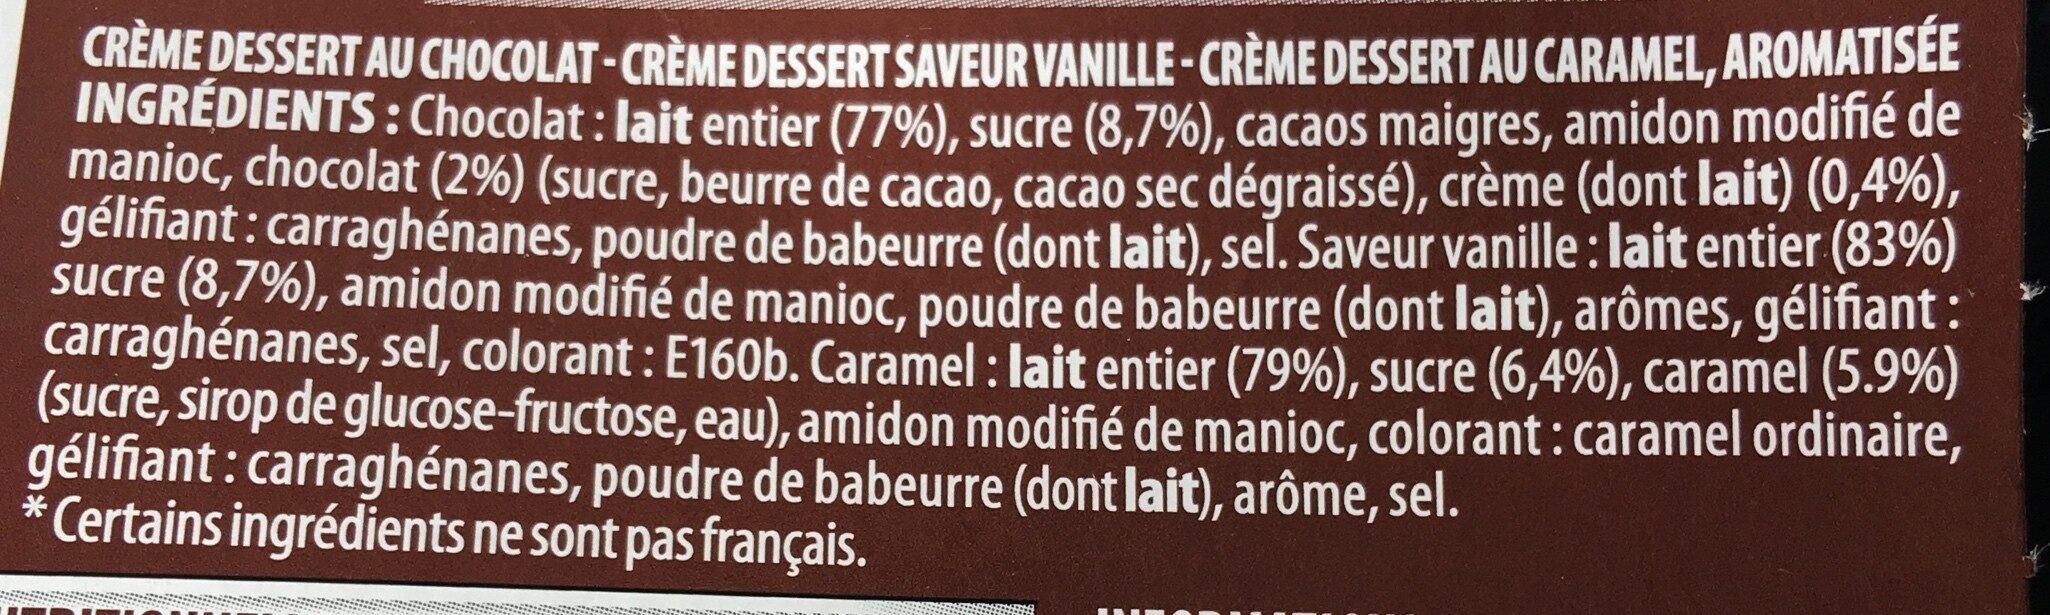 Paturette 4 chocolat 4 caramel 4 saveur vanille - Ingrédients